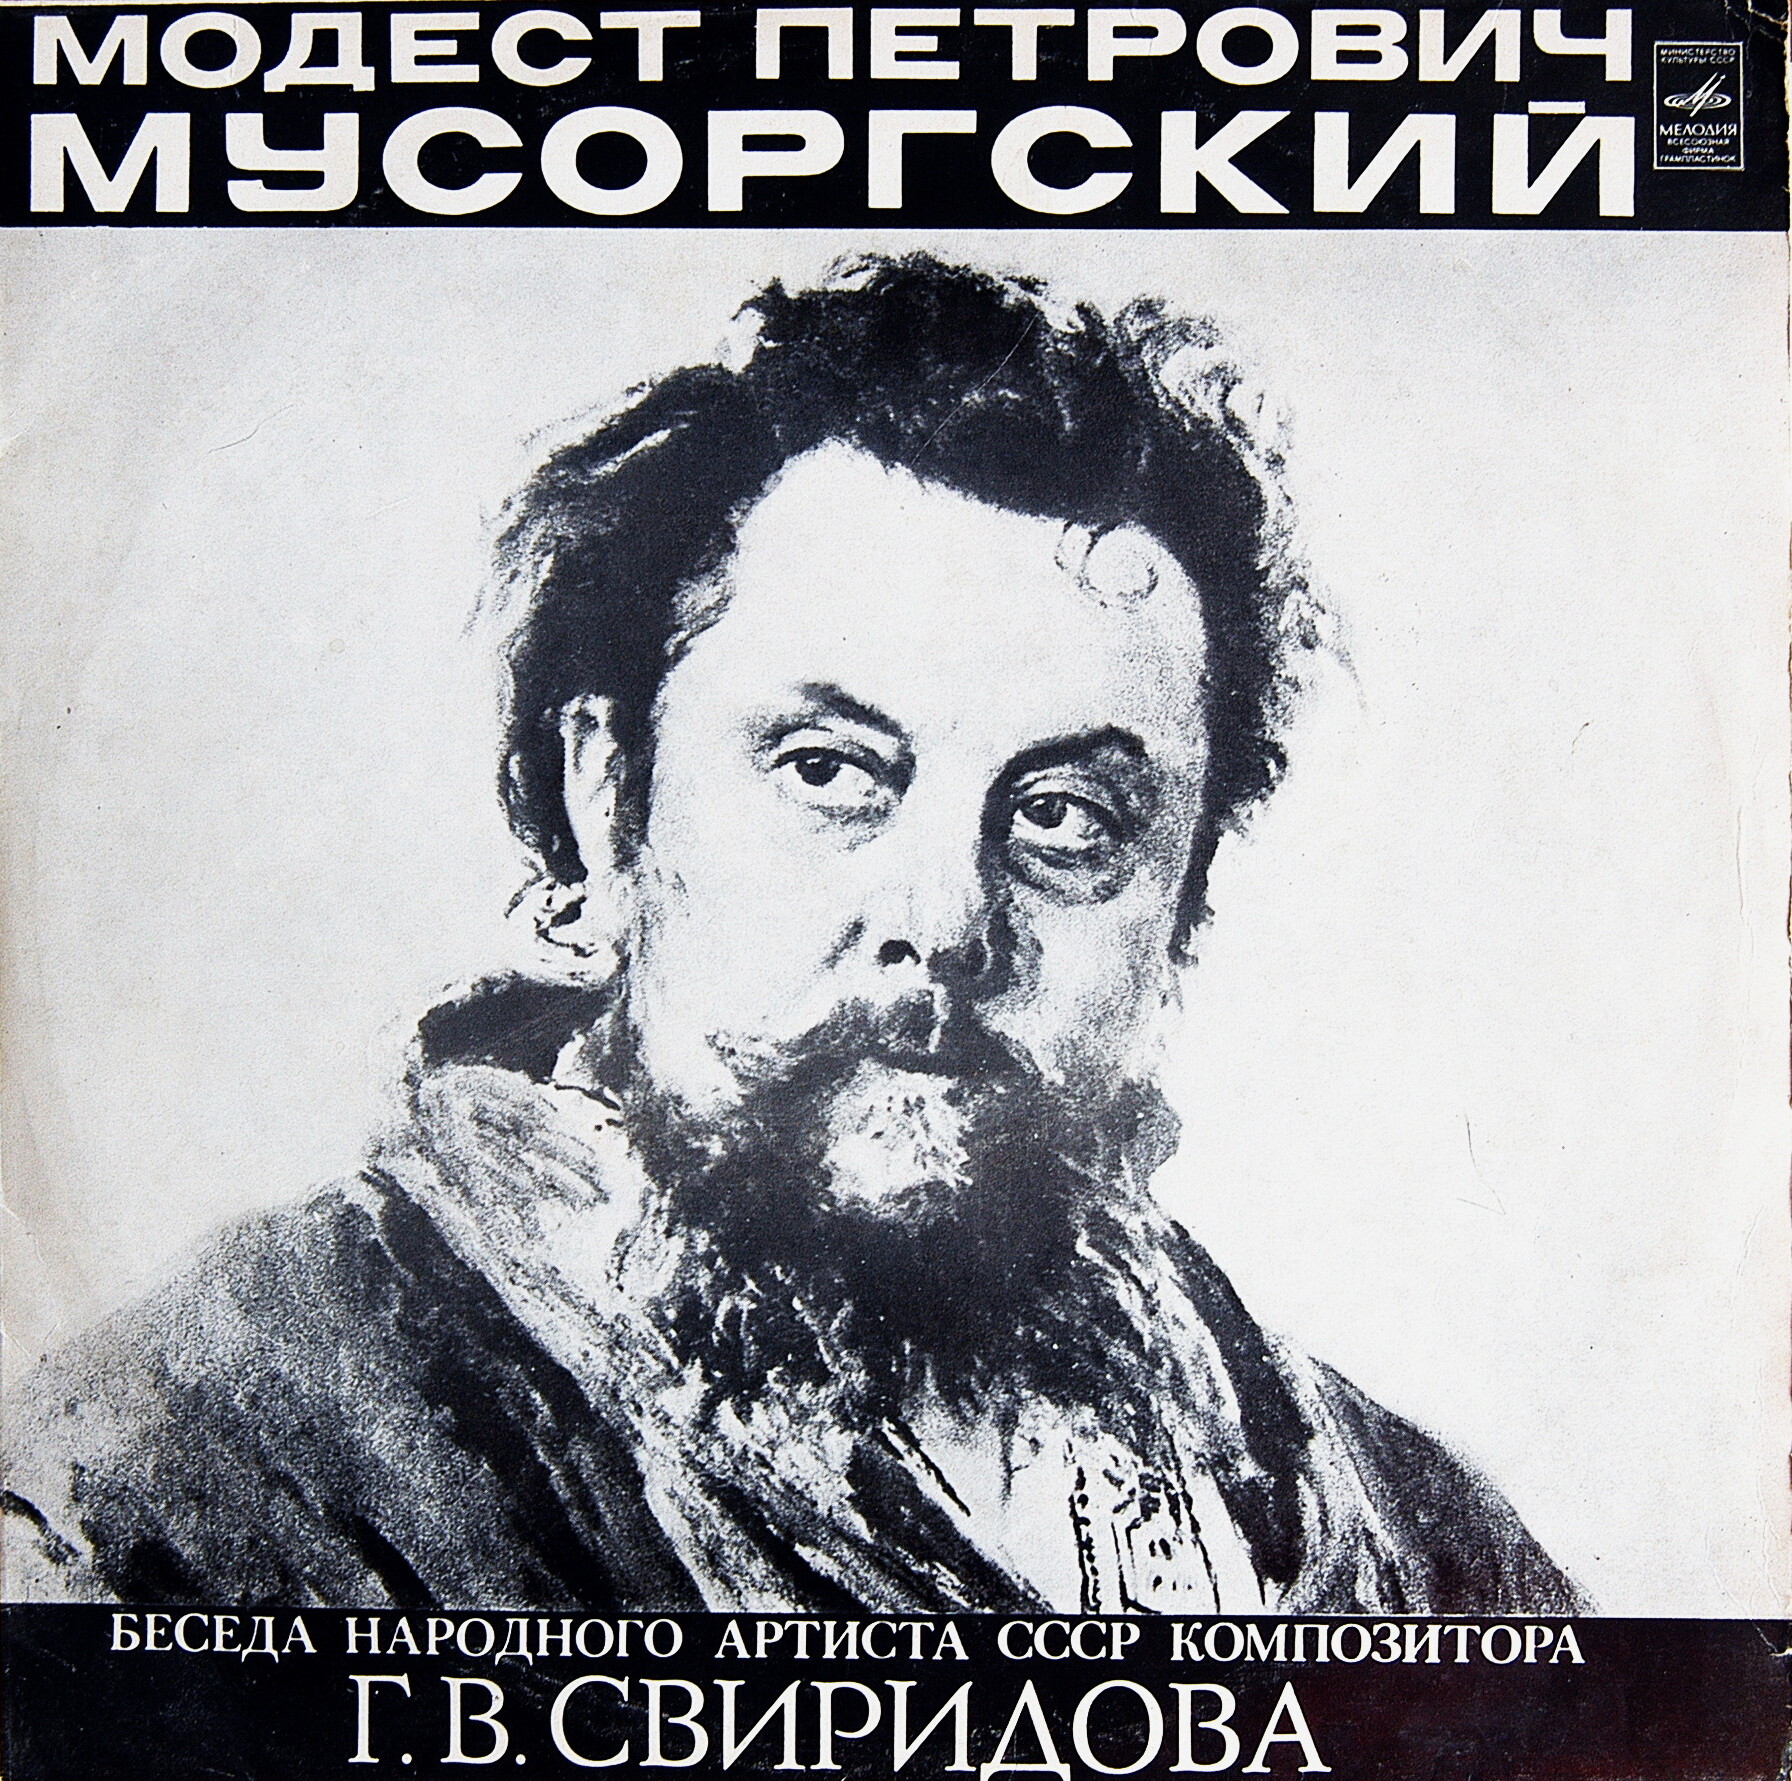 М. П. МУСОРГСКИЙ (1839-1881).